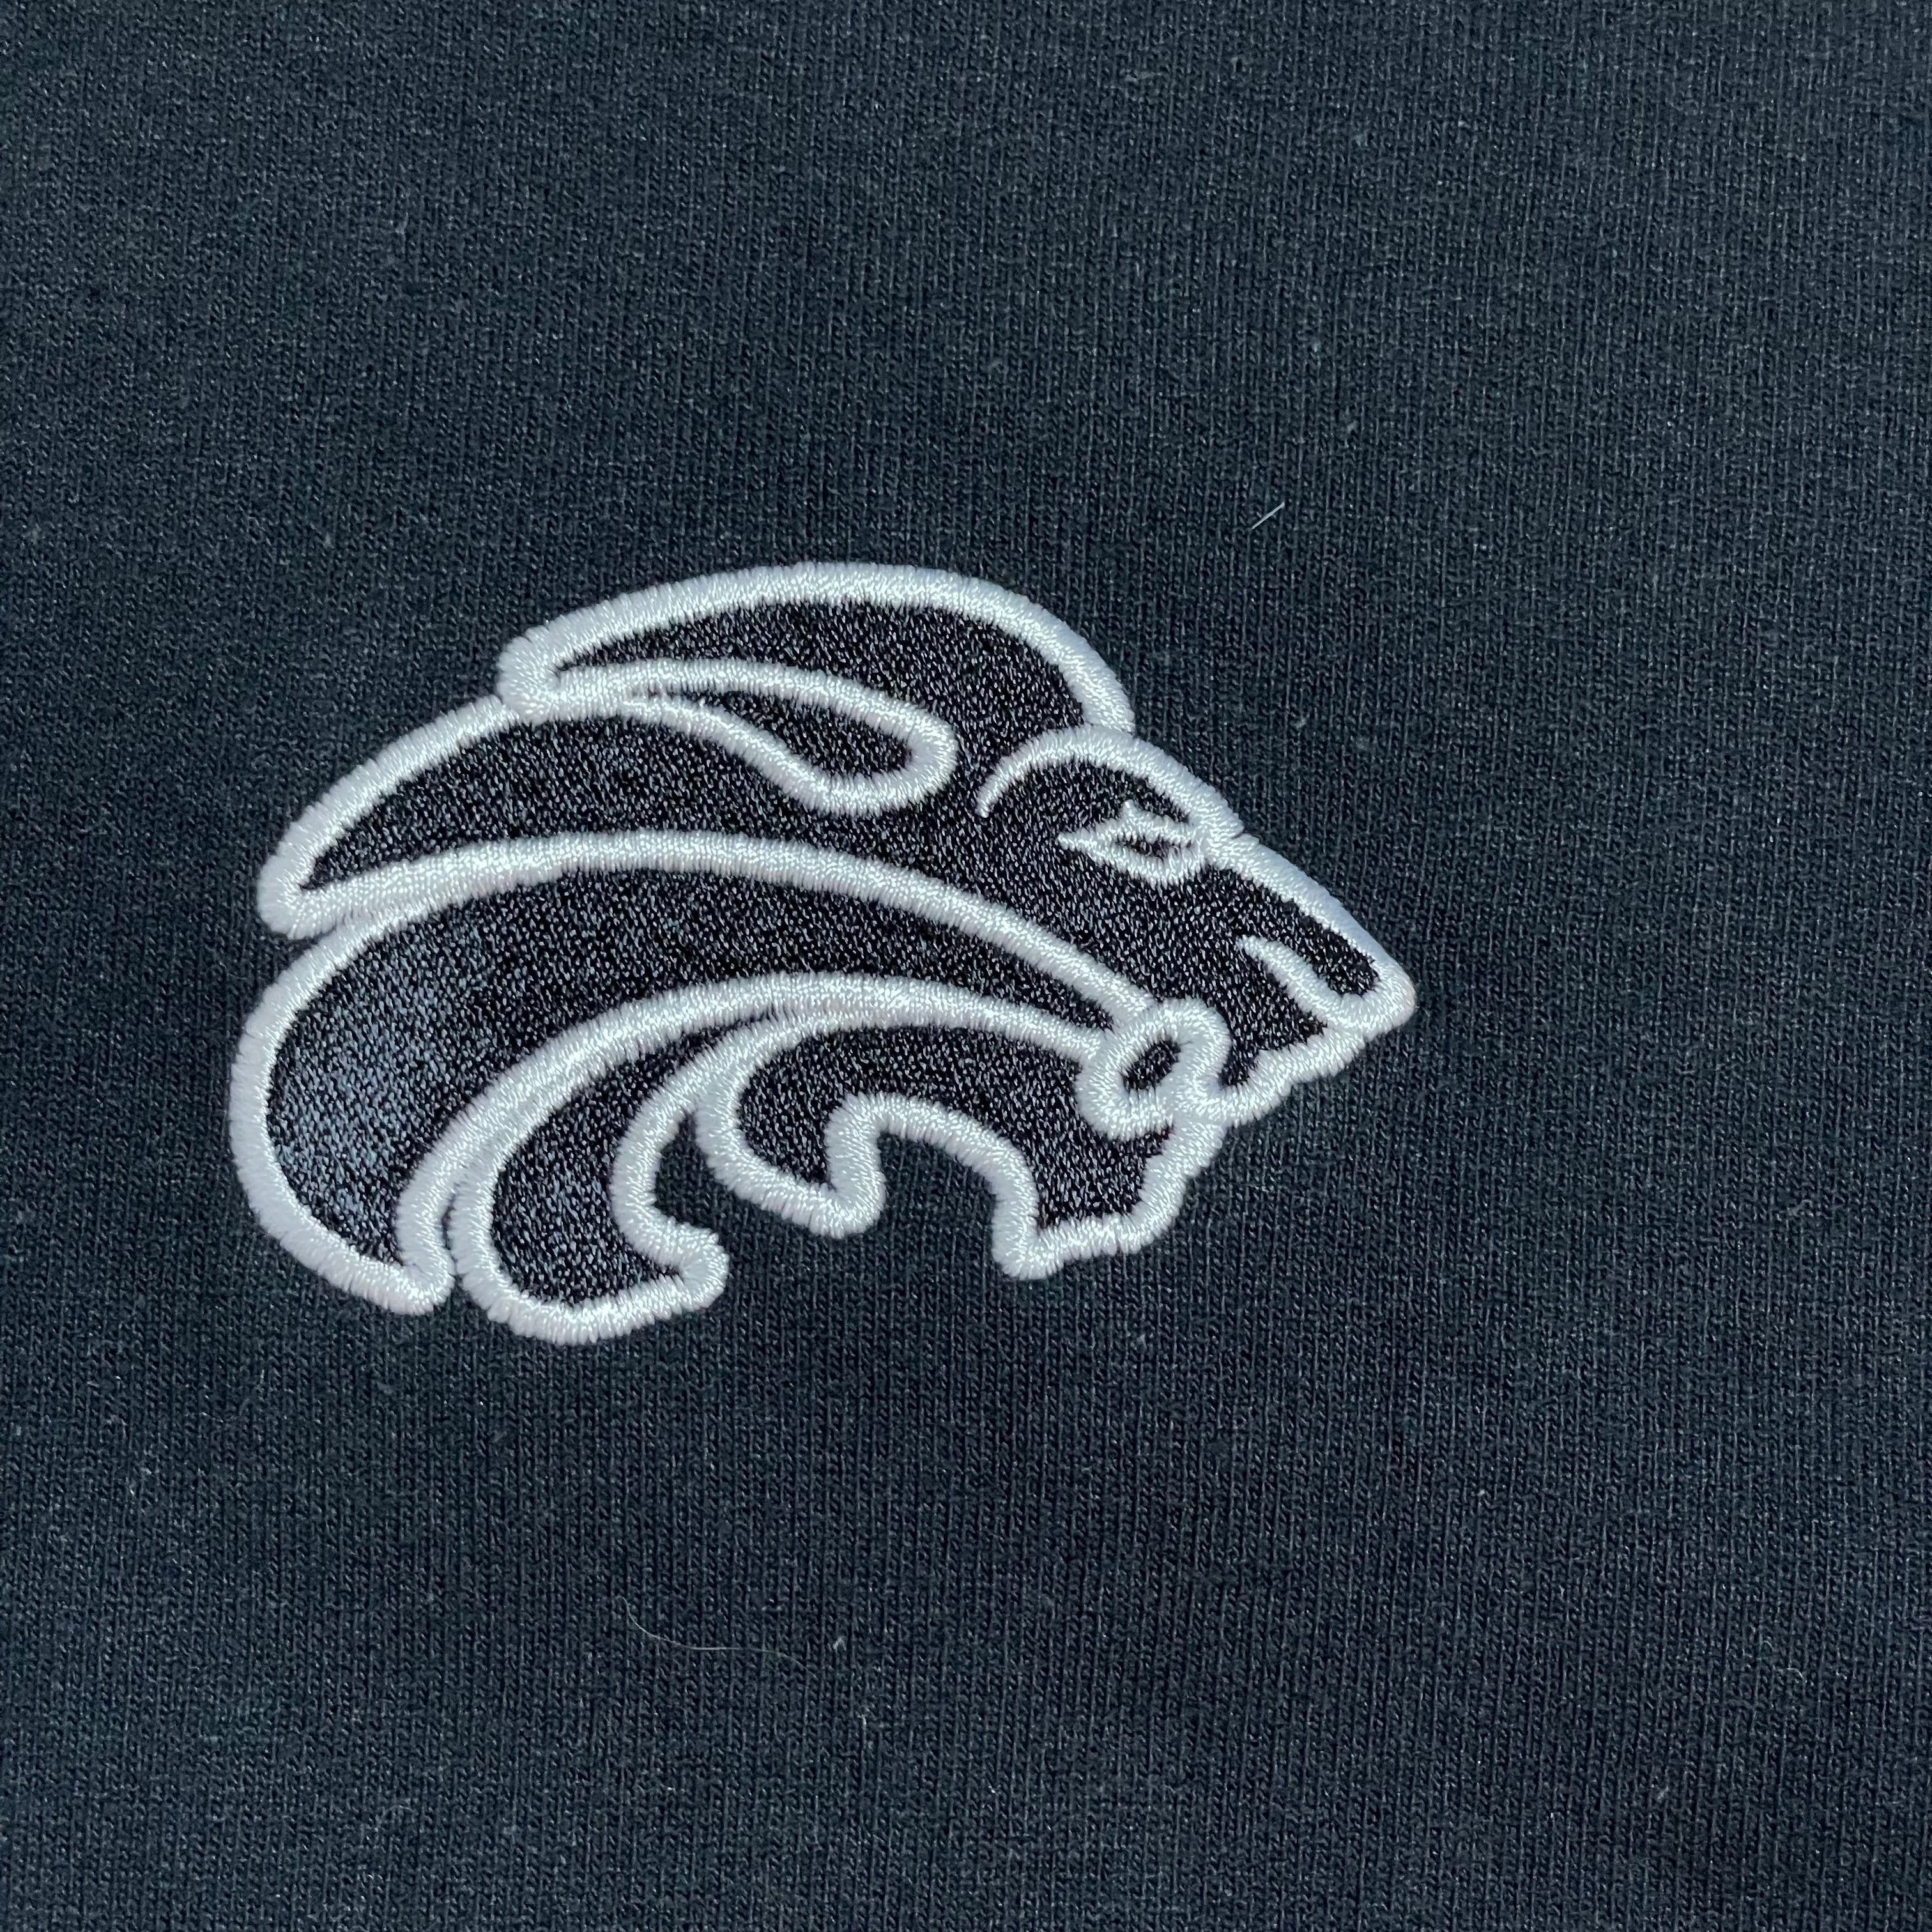 US  ロゴ刺繍  パーカー  ワンポイントロゴ  5XL  グレー  77